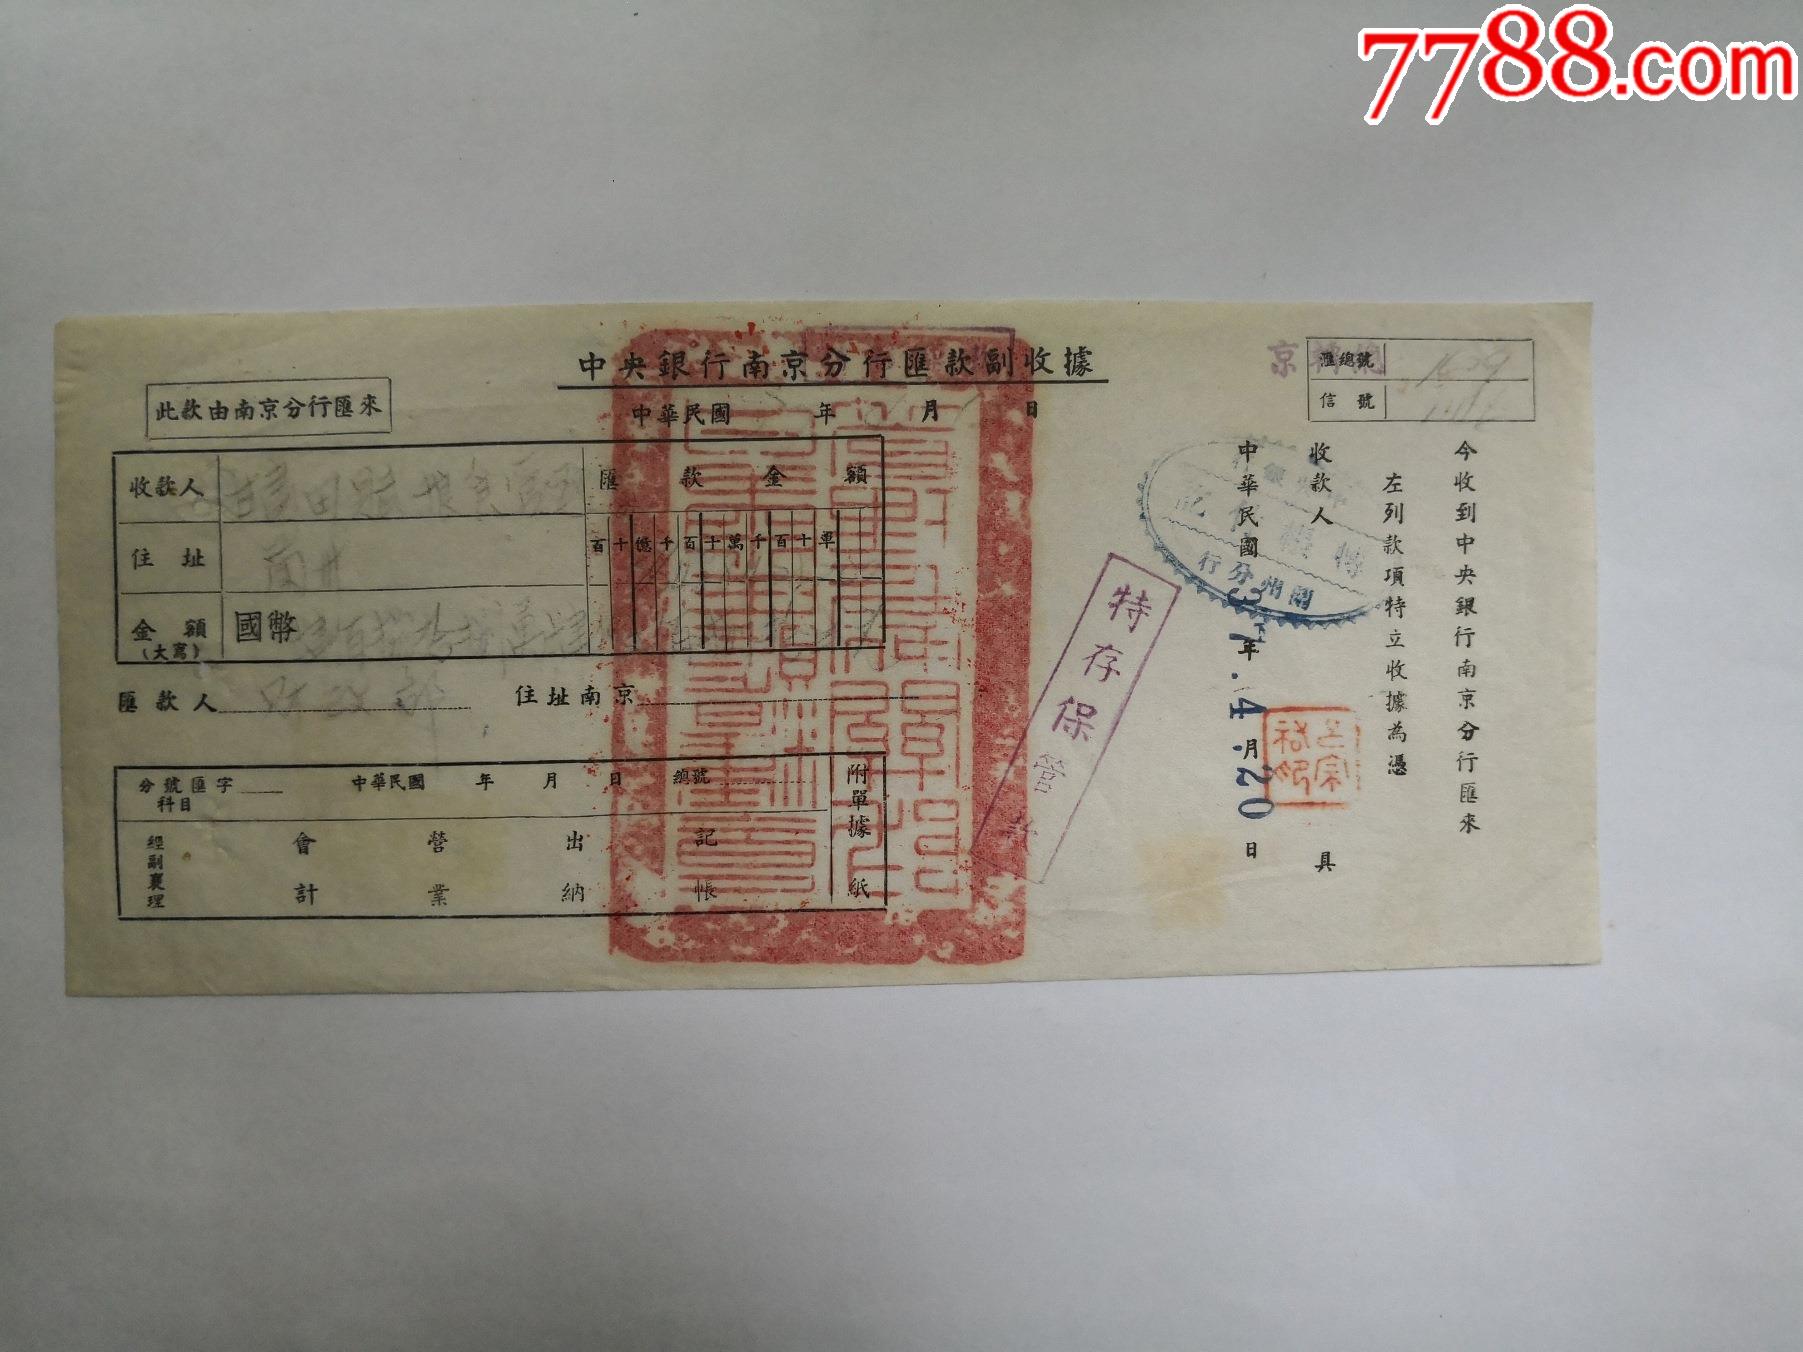 1946年4月12日中银行收据甘肃田赋管理处处长吕宗佑钤印